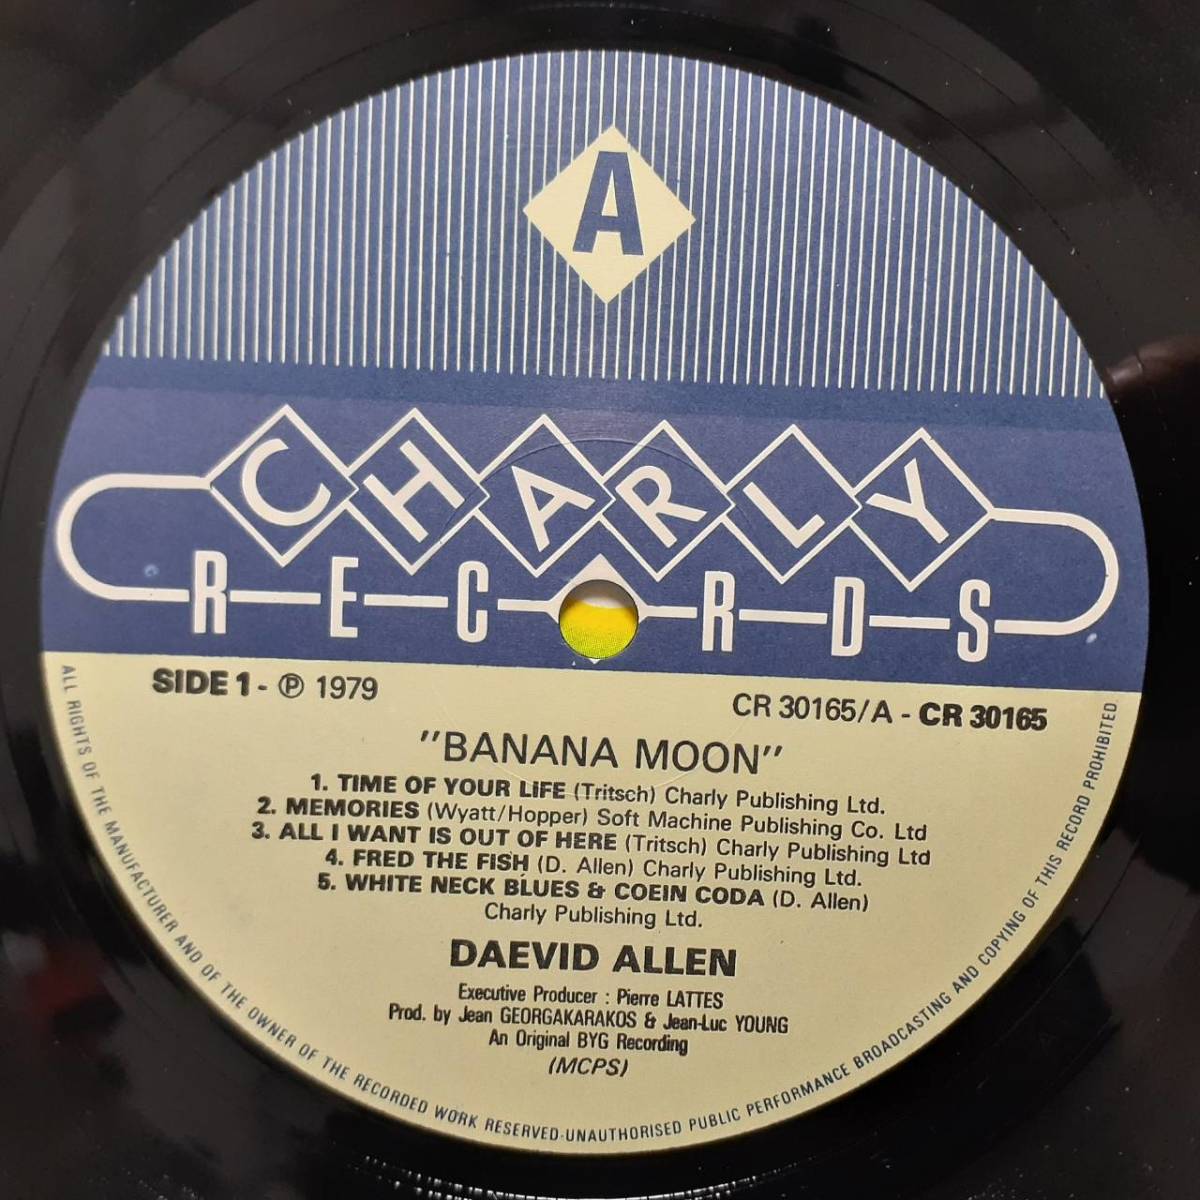 英盤LP！マトA1！Daevid Allen (Gong) / Banana Moon 1979年 Charly CR30165 カンタベリー傑作！Robert Wyatt Gary Wright Maggie Bell_画像2